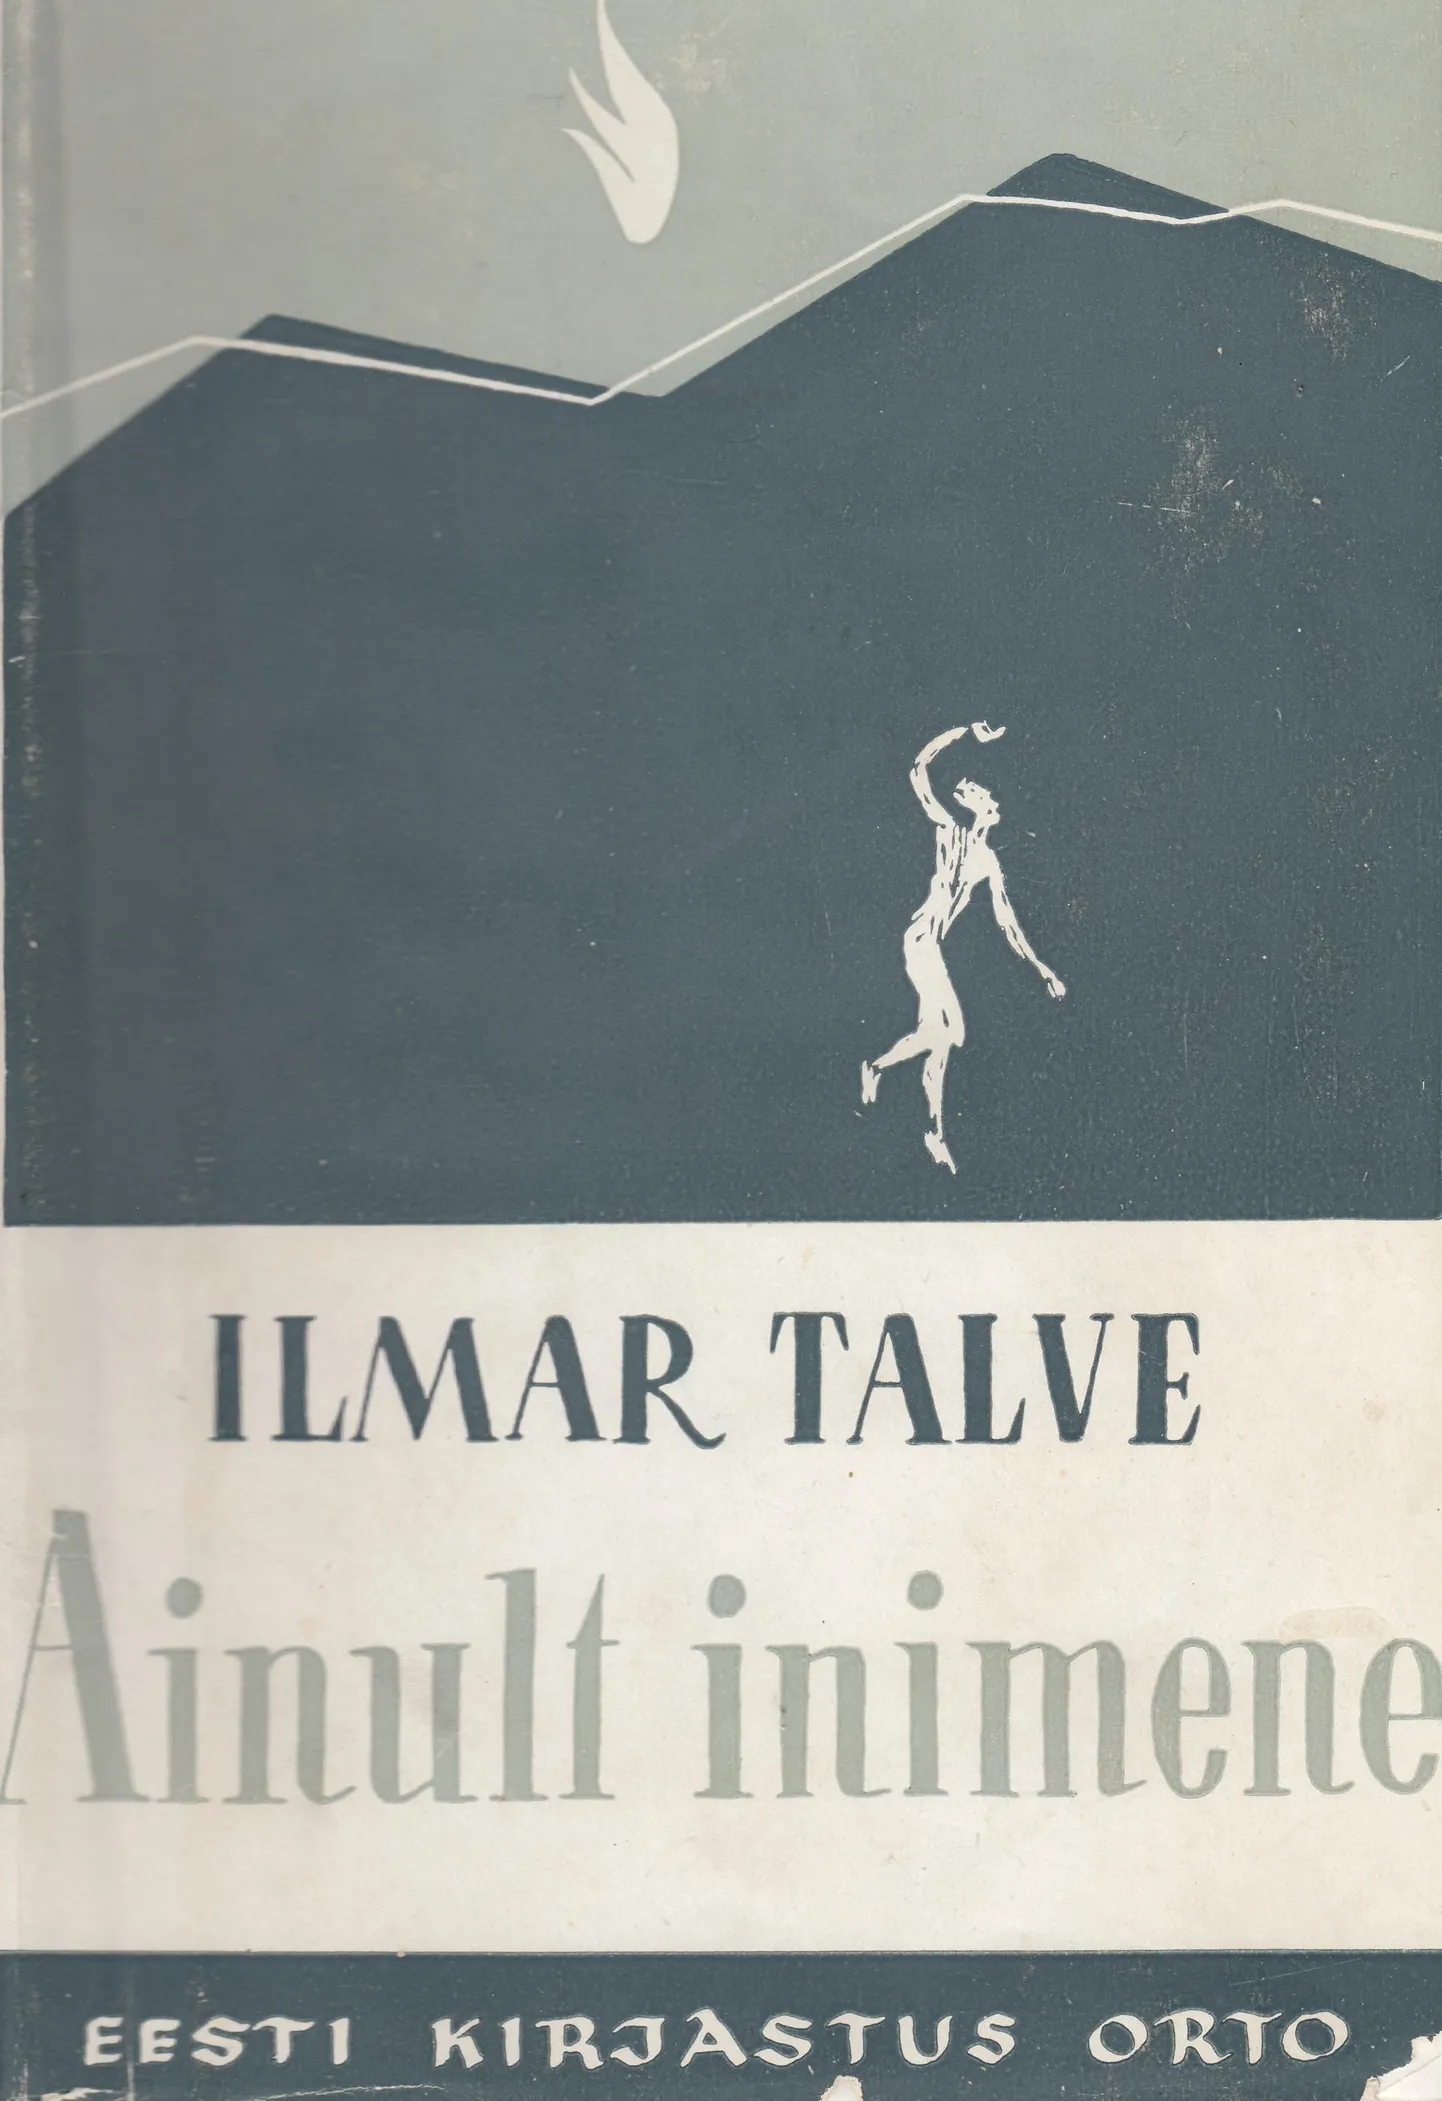 Raamatu «Ainult inimene» esikaas, kujundanud Olev Mikiver. Kuigi Rootsis trükitud esikteose ilmumisaastaks on raamatus märgitud 1948, sai autor selle eksemplarid kätte veebruaris 1949 ning rohkem ongi seda vaadeldud 1949. aasta uudiskirjanduse kontekstis.